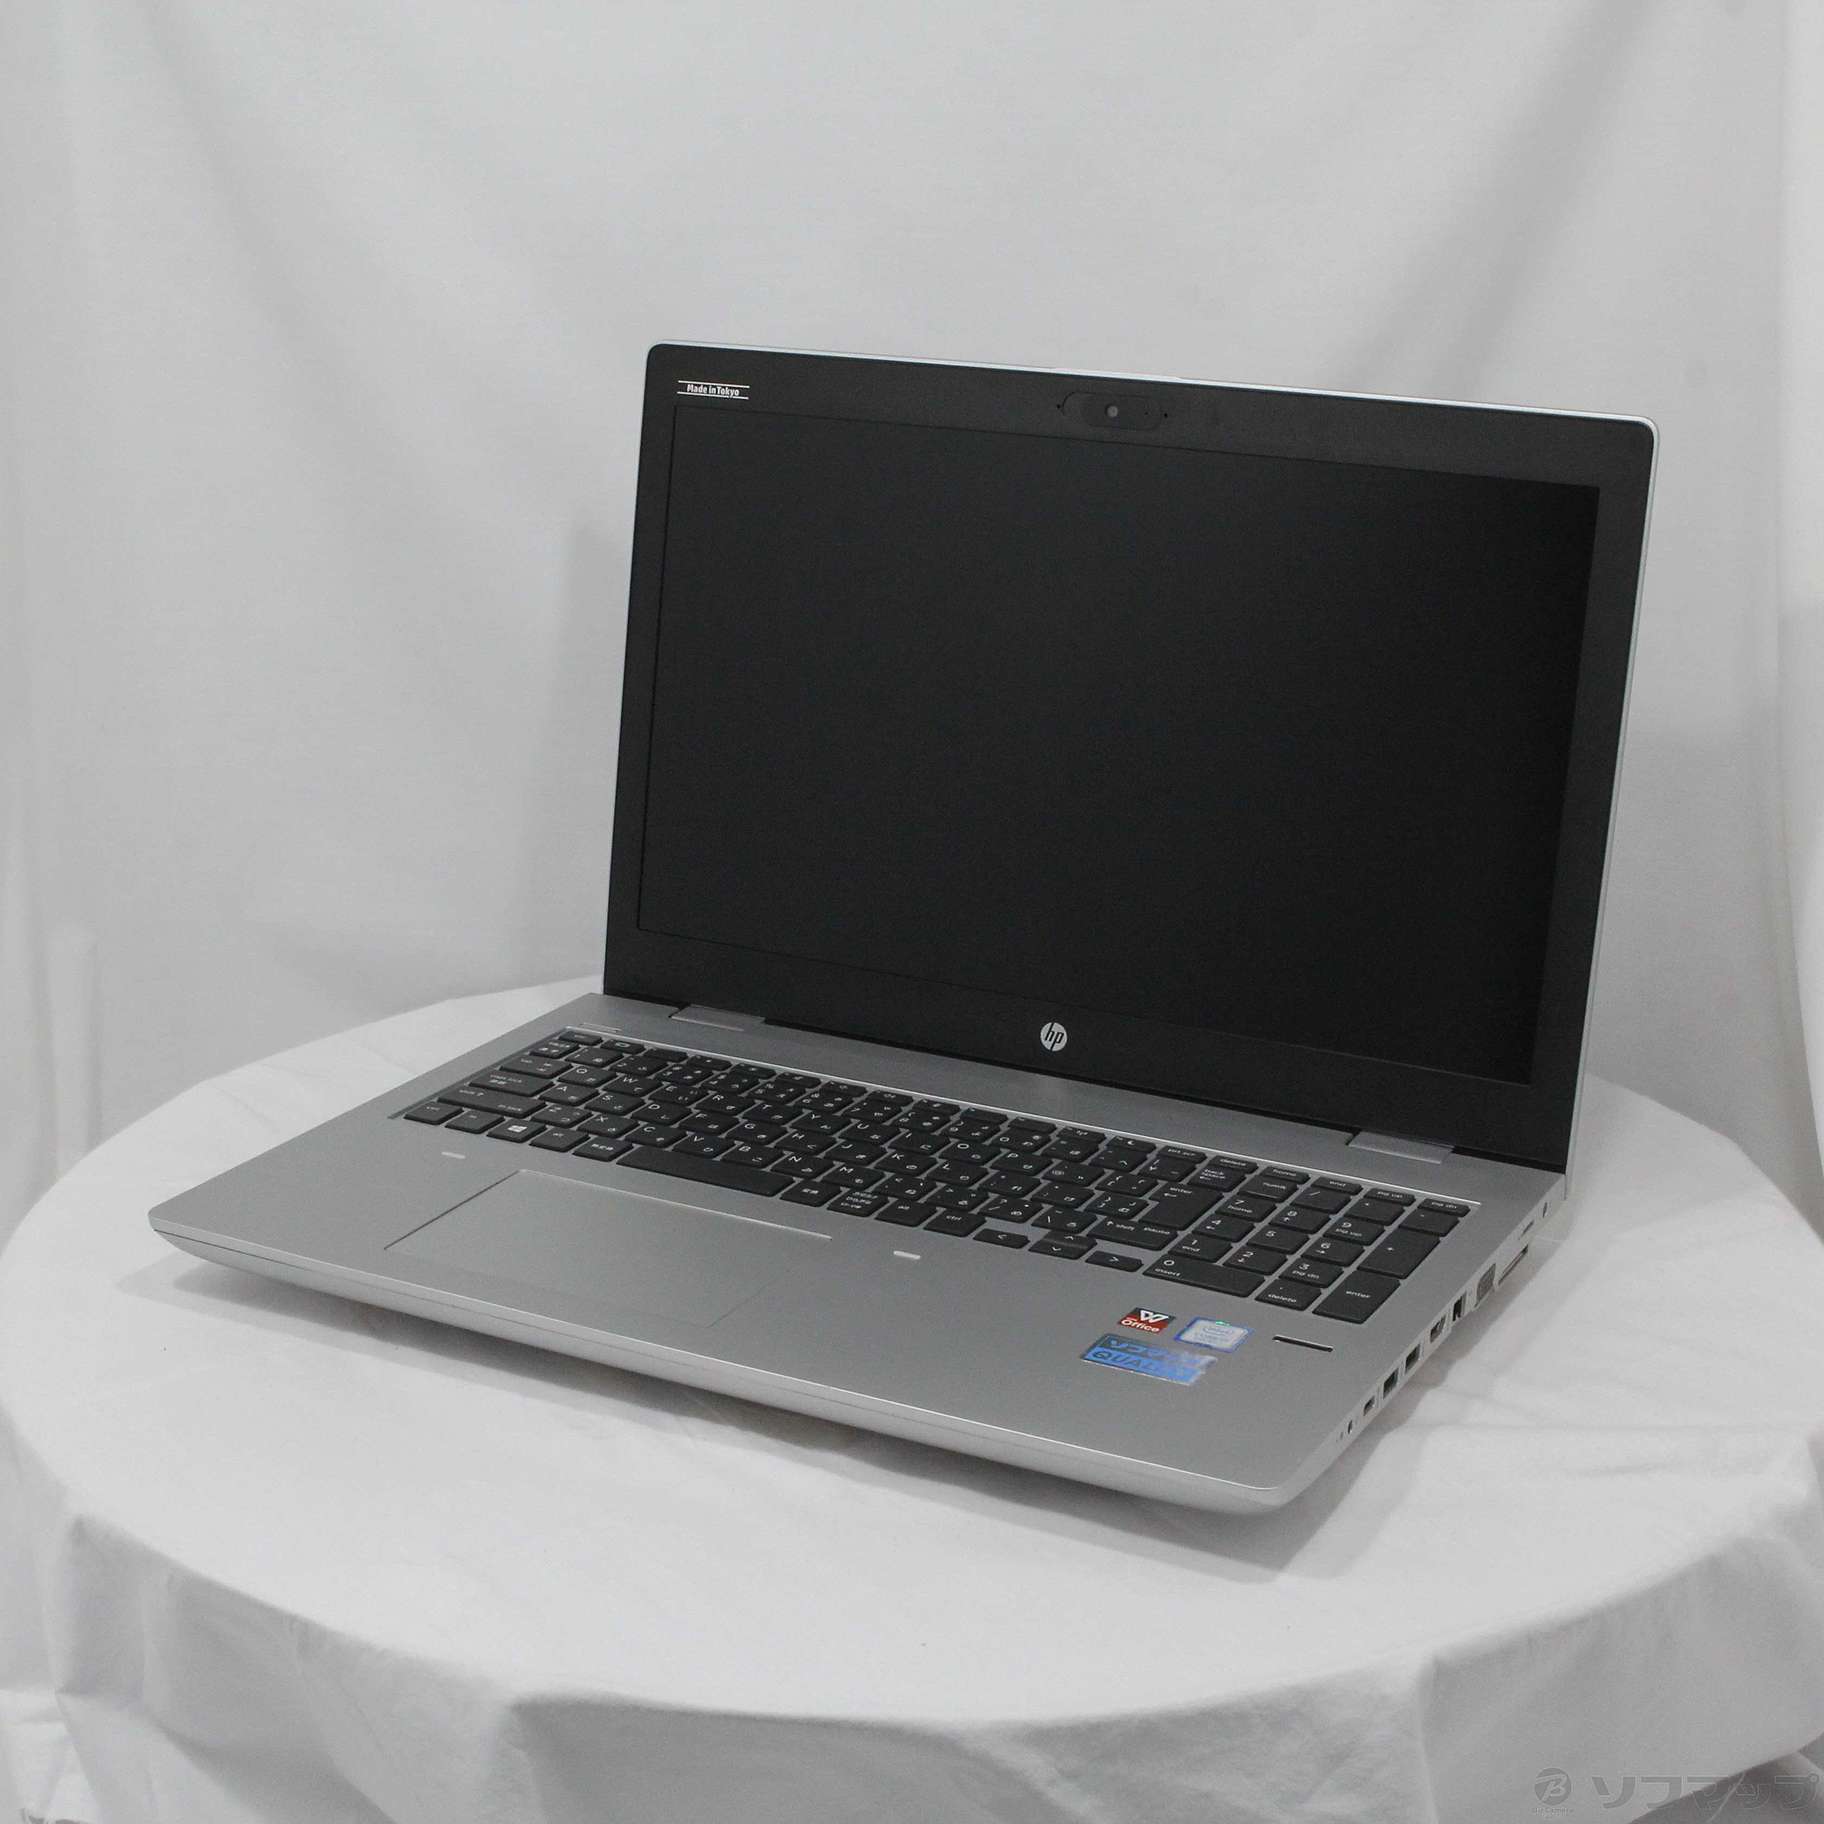 【ハイスペックPC】HP ProBook 650 G4